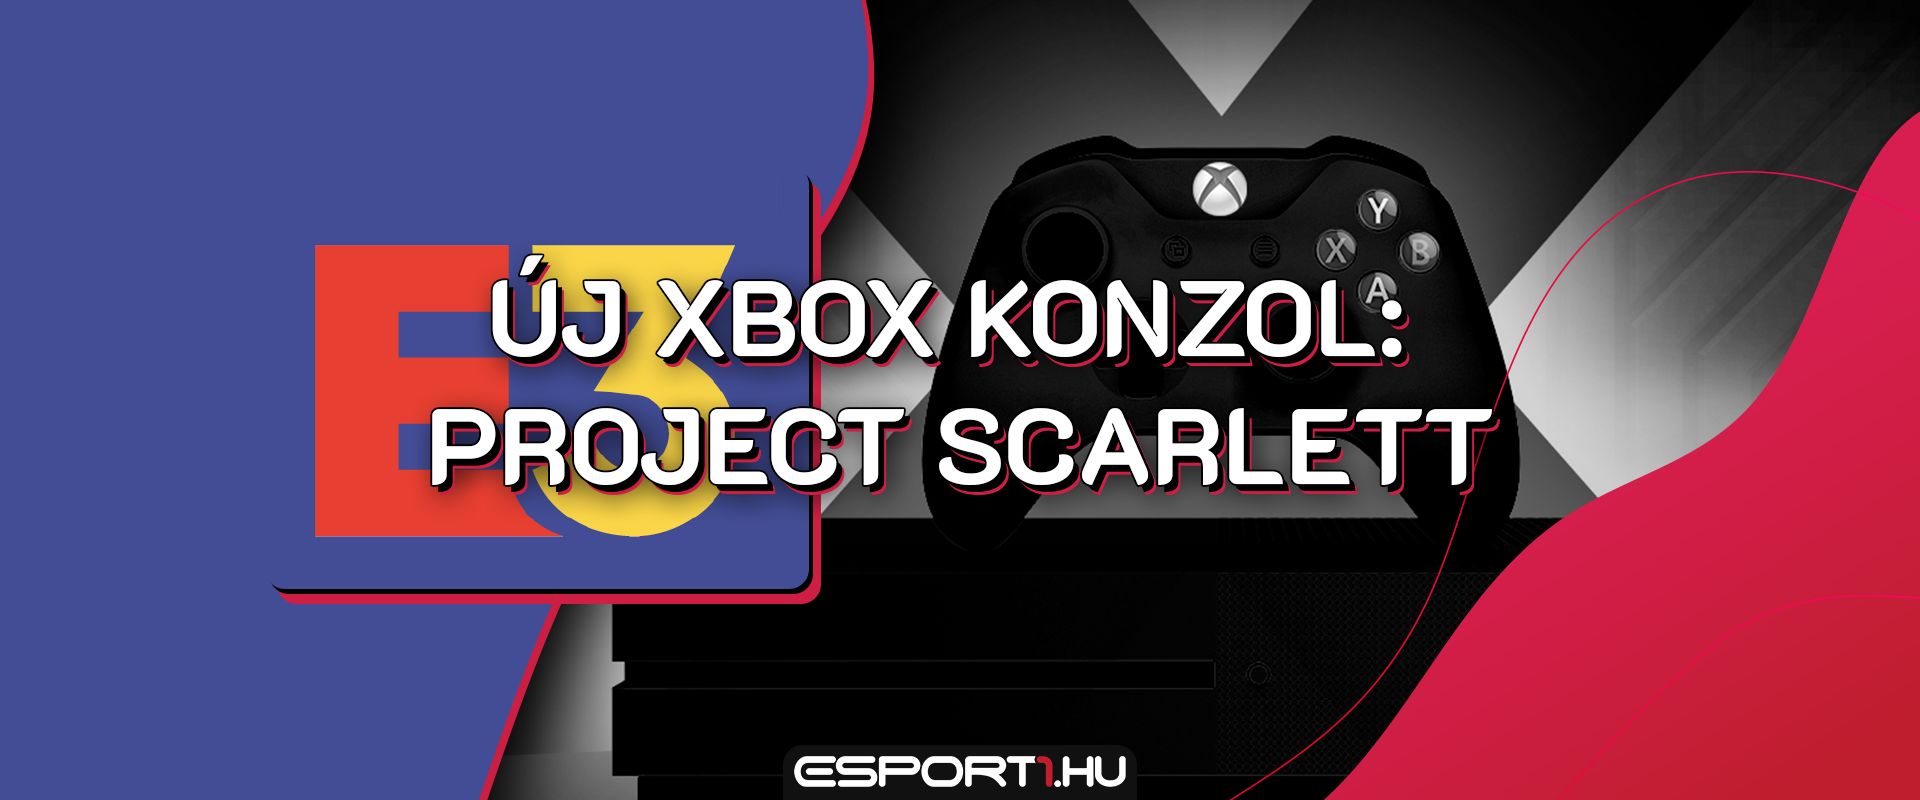 Project Scarlett: 2020-ban érkezik az új Xbox konzol